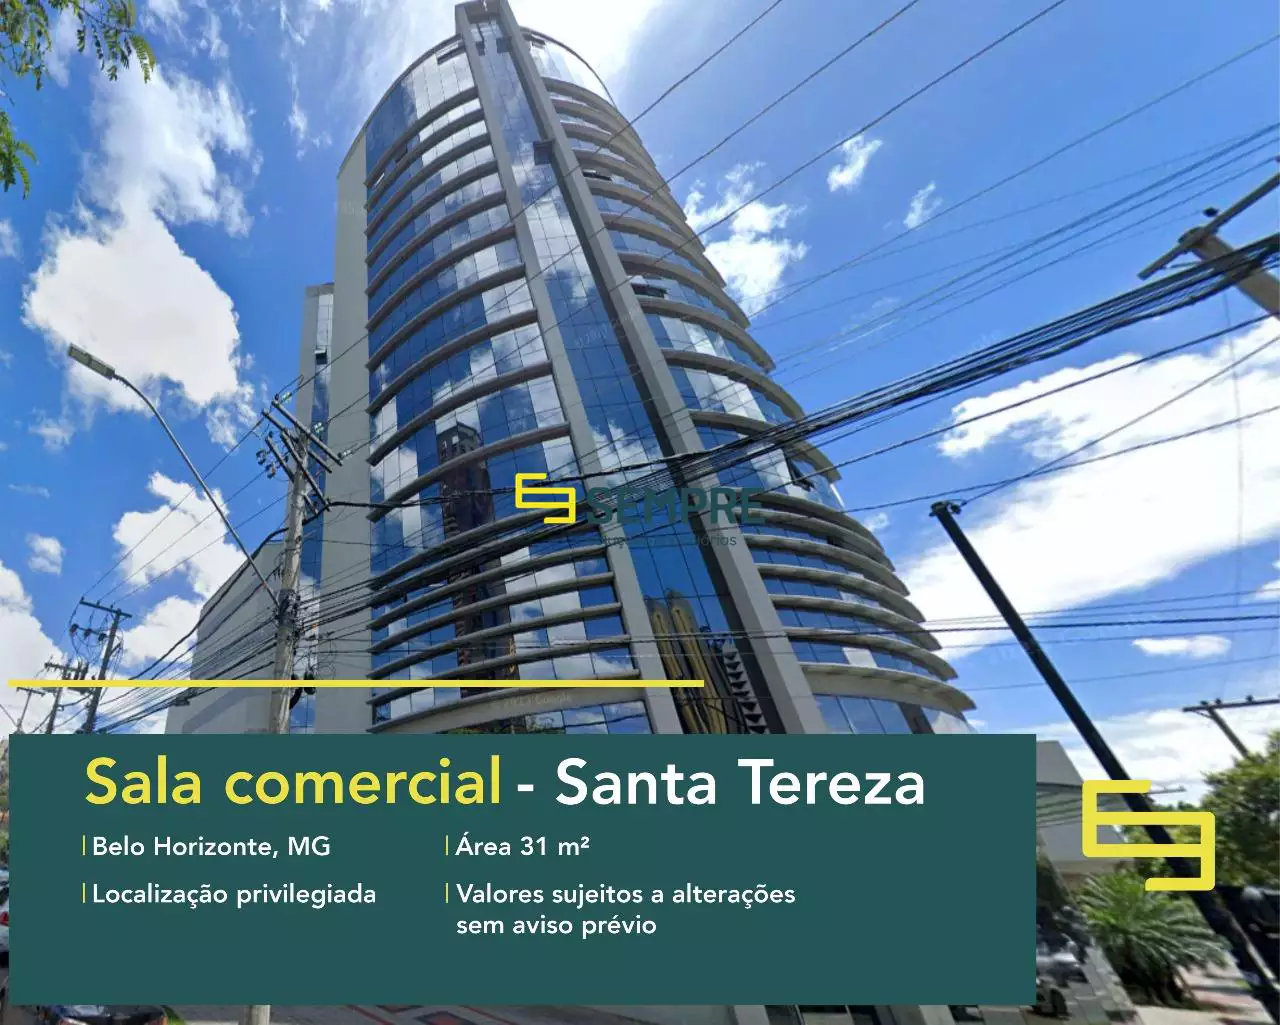 Andar corrido no Santa Tereza à venda em Belo Horizonte, em excelente localização. O estabelecimento comercial conta com área de 31,15 m².